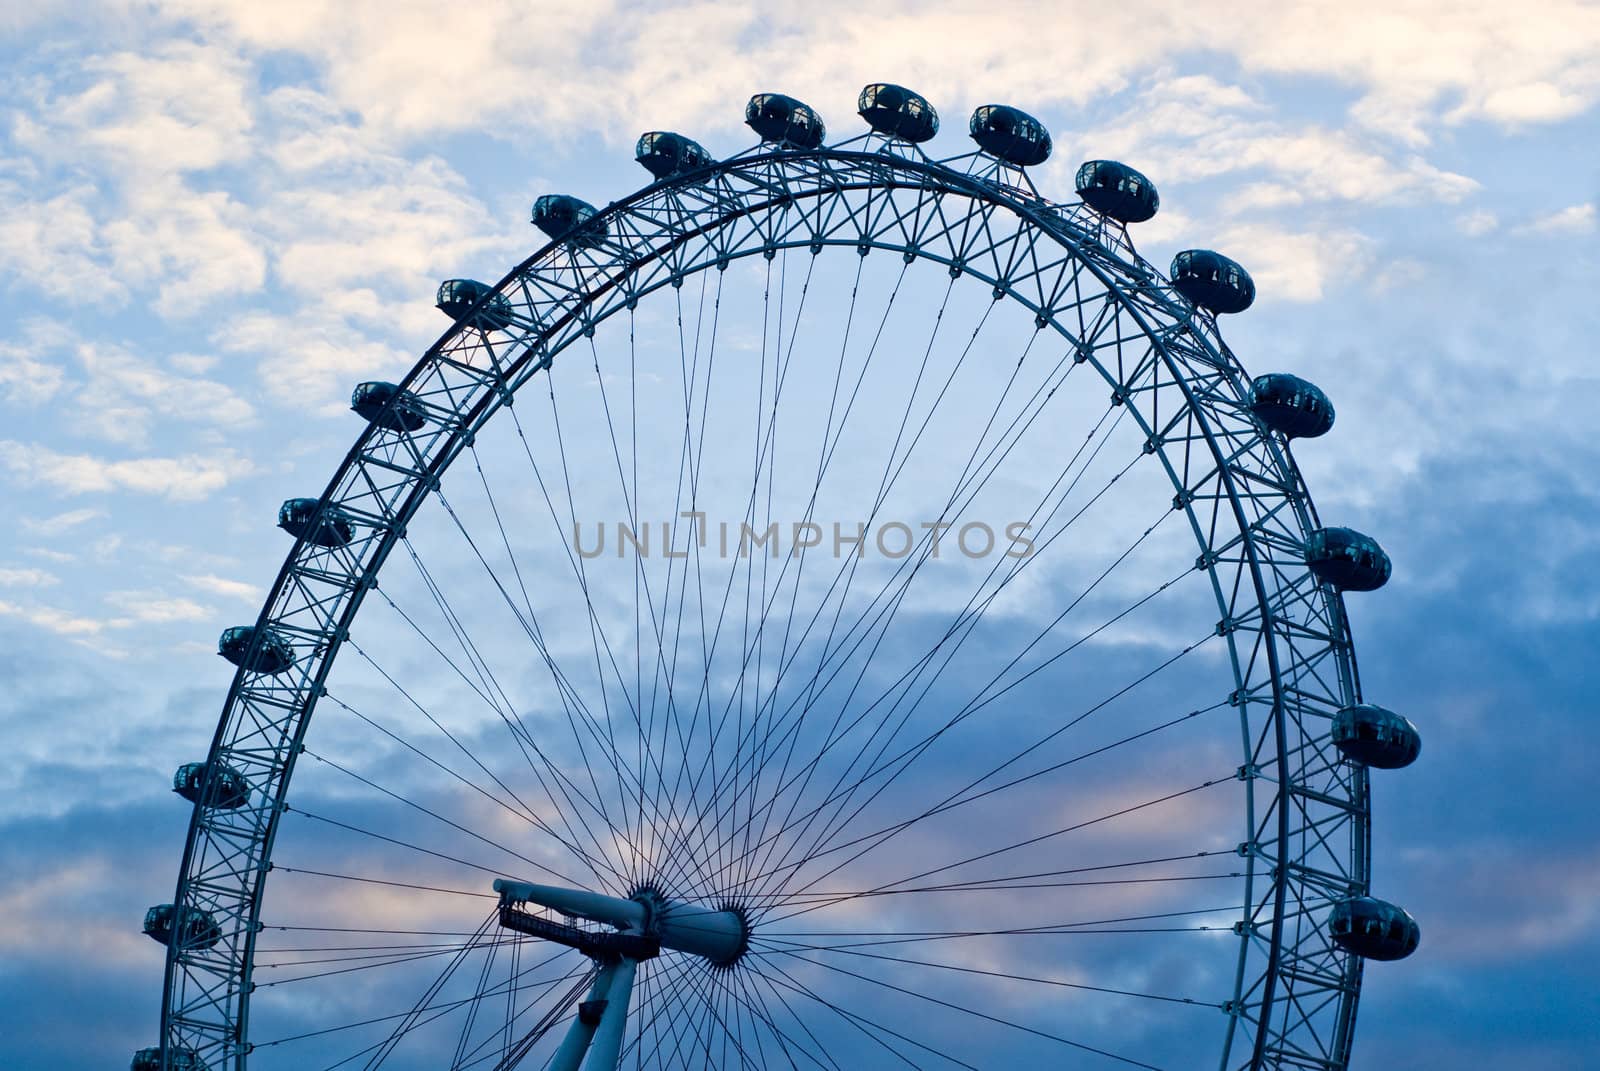 London Eye by fcarucci